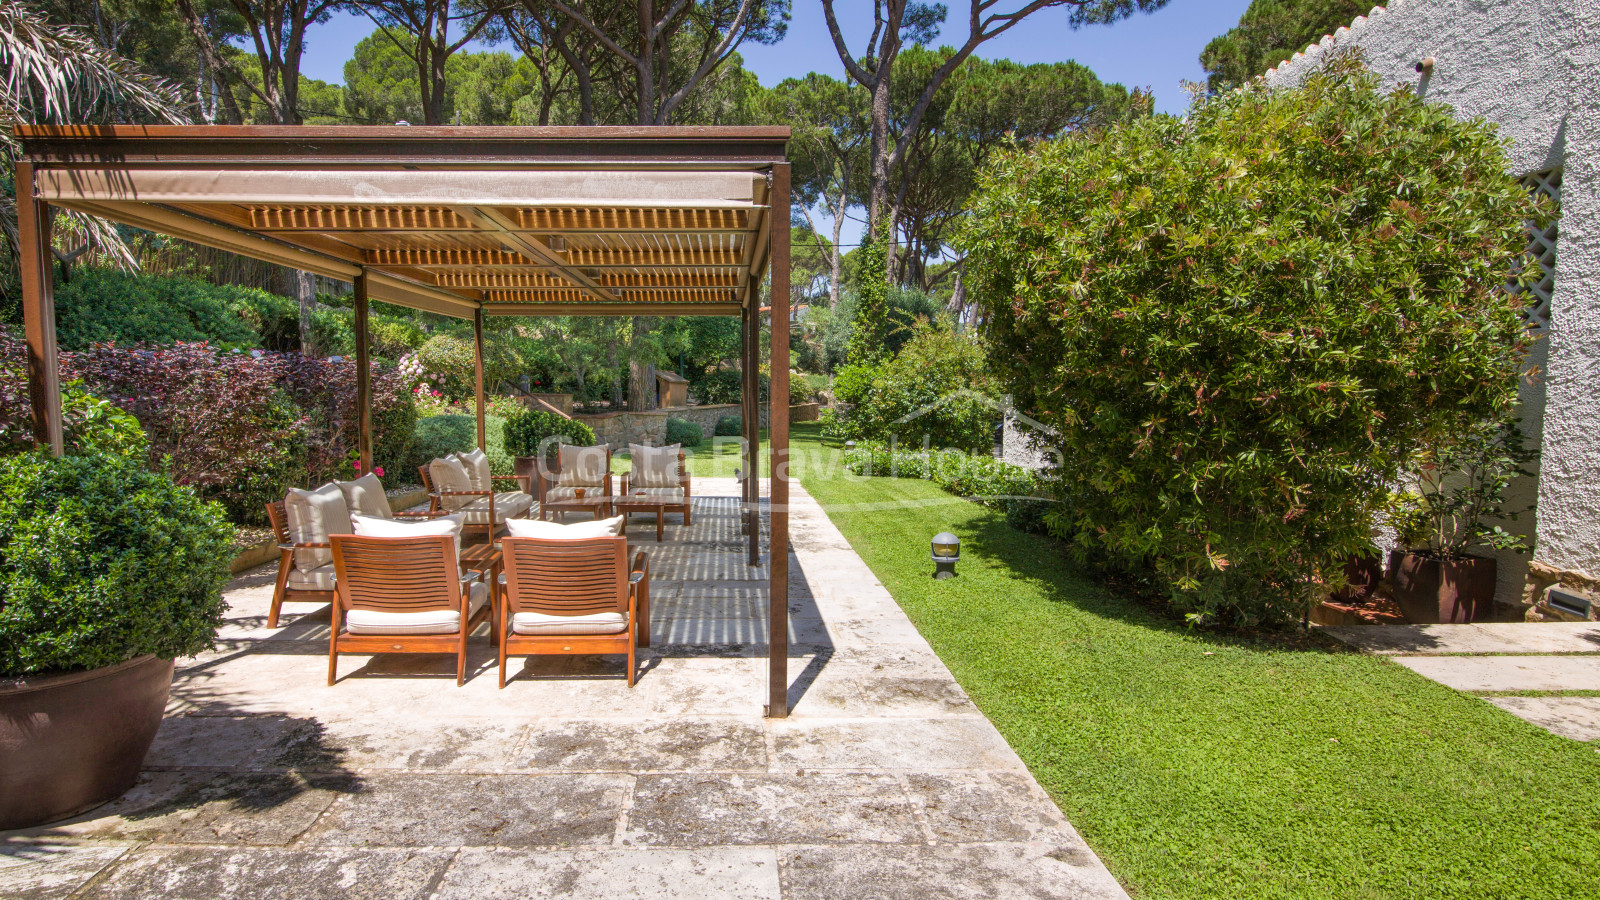 Villa de lujo en primera línea de mar en Tamariu, con increíbles vistas al mar y jardín con piscina